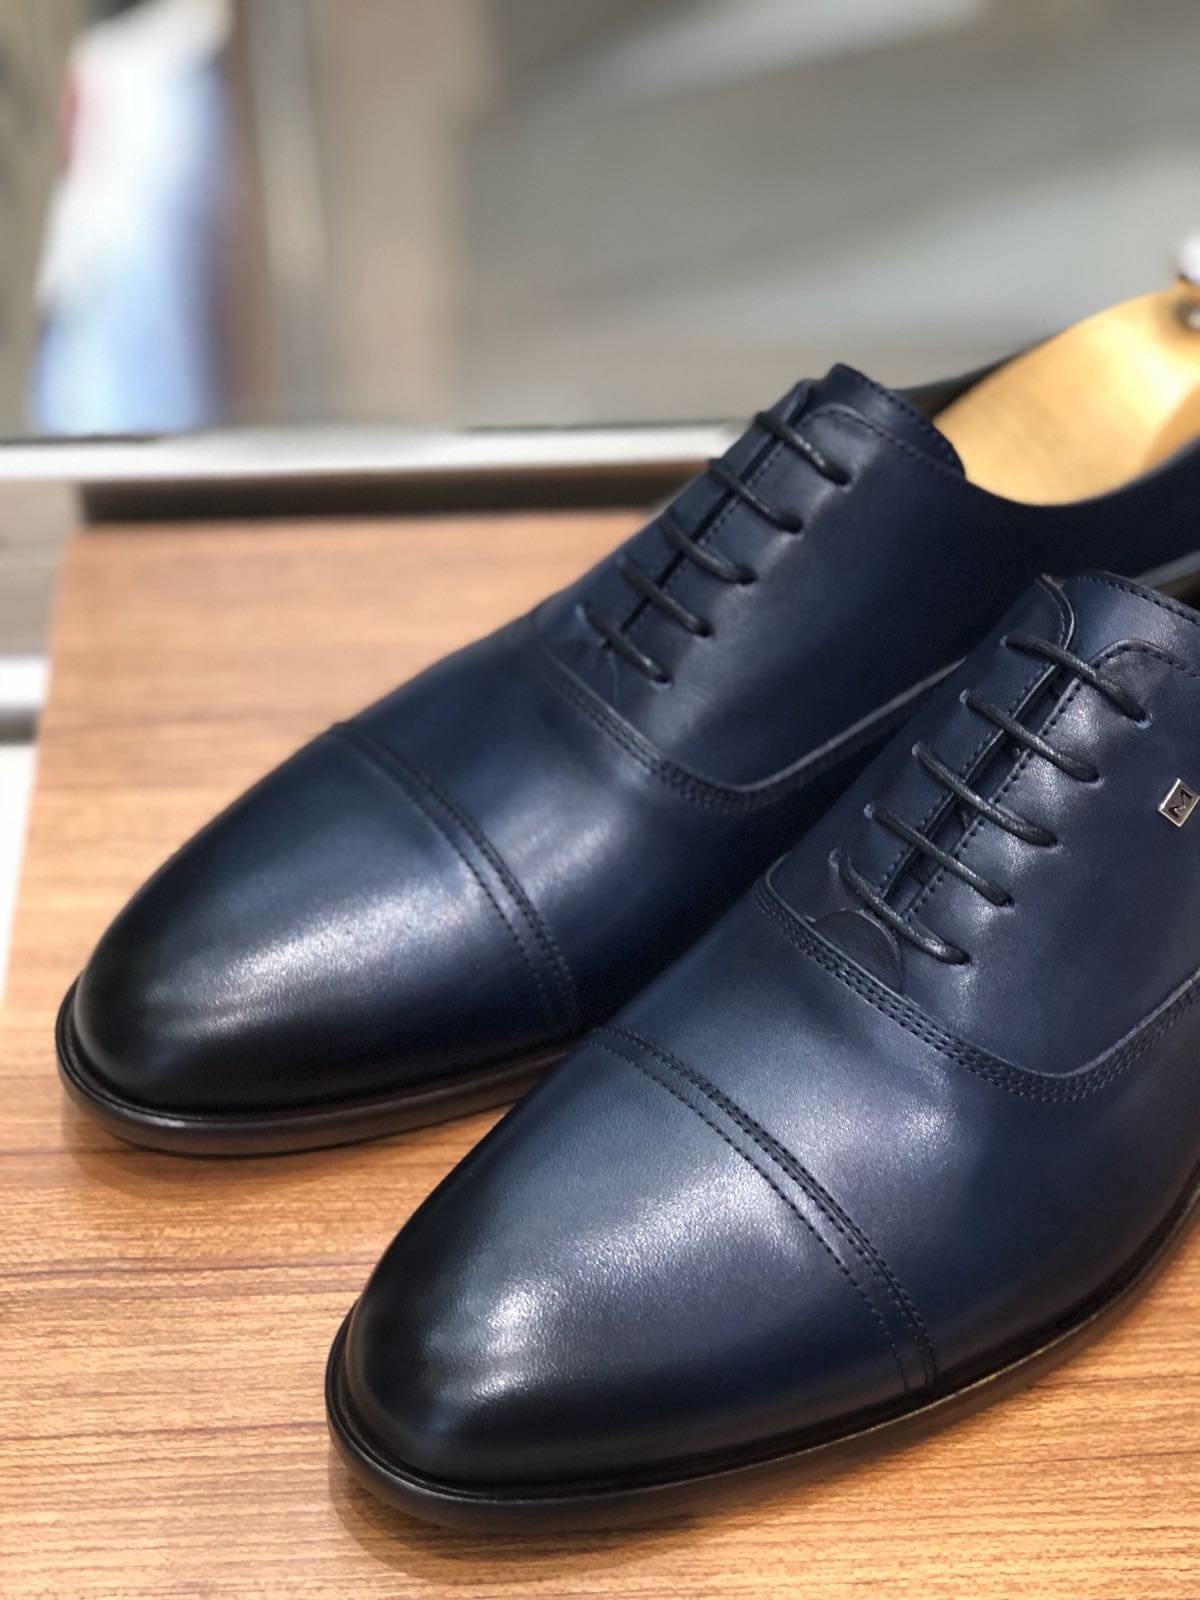 blue colour leather shoes